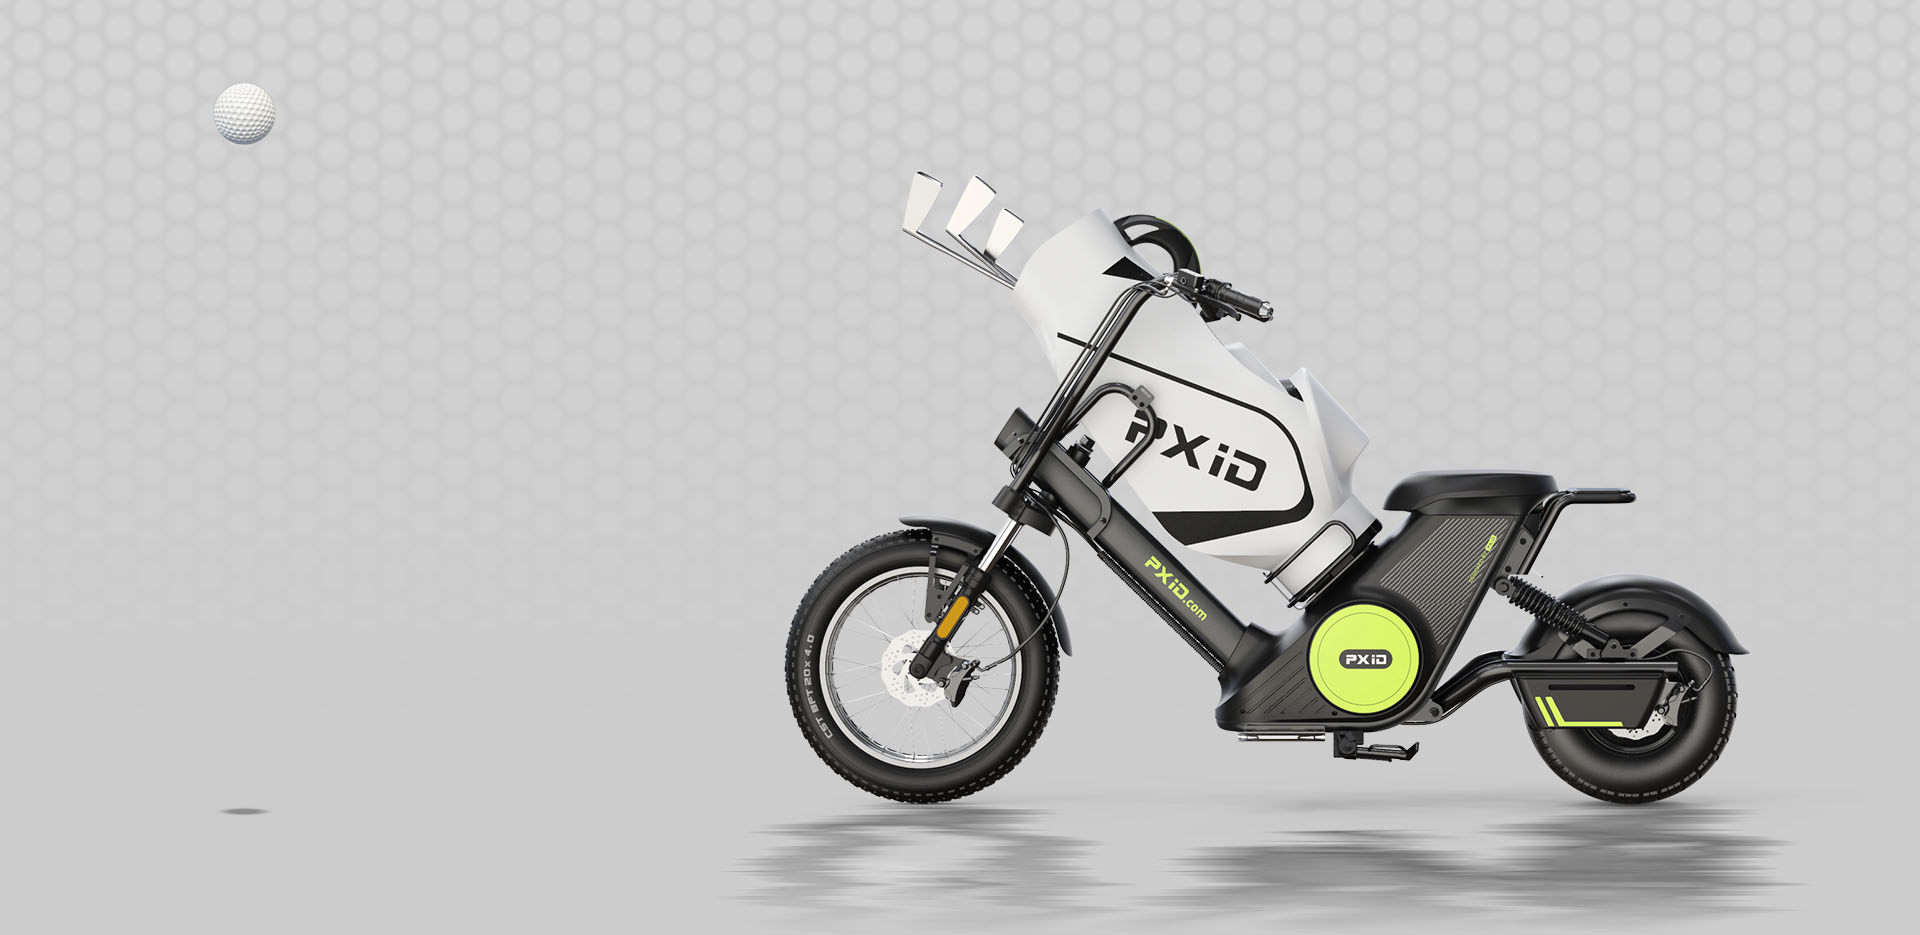 Motocicleta eléctrica de batería extraíble Citycoco 2000W con bolsa de golf Imagen destacada